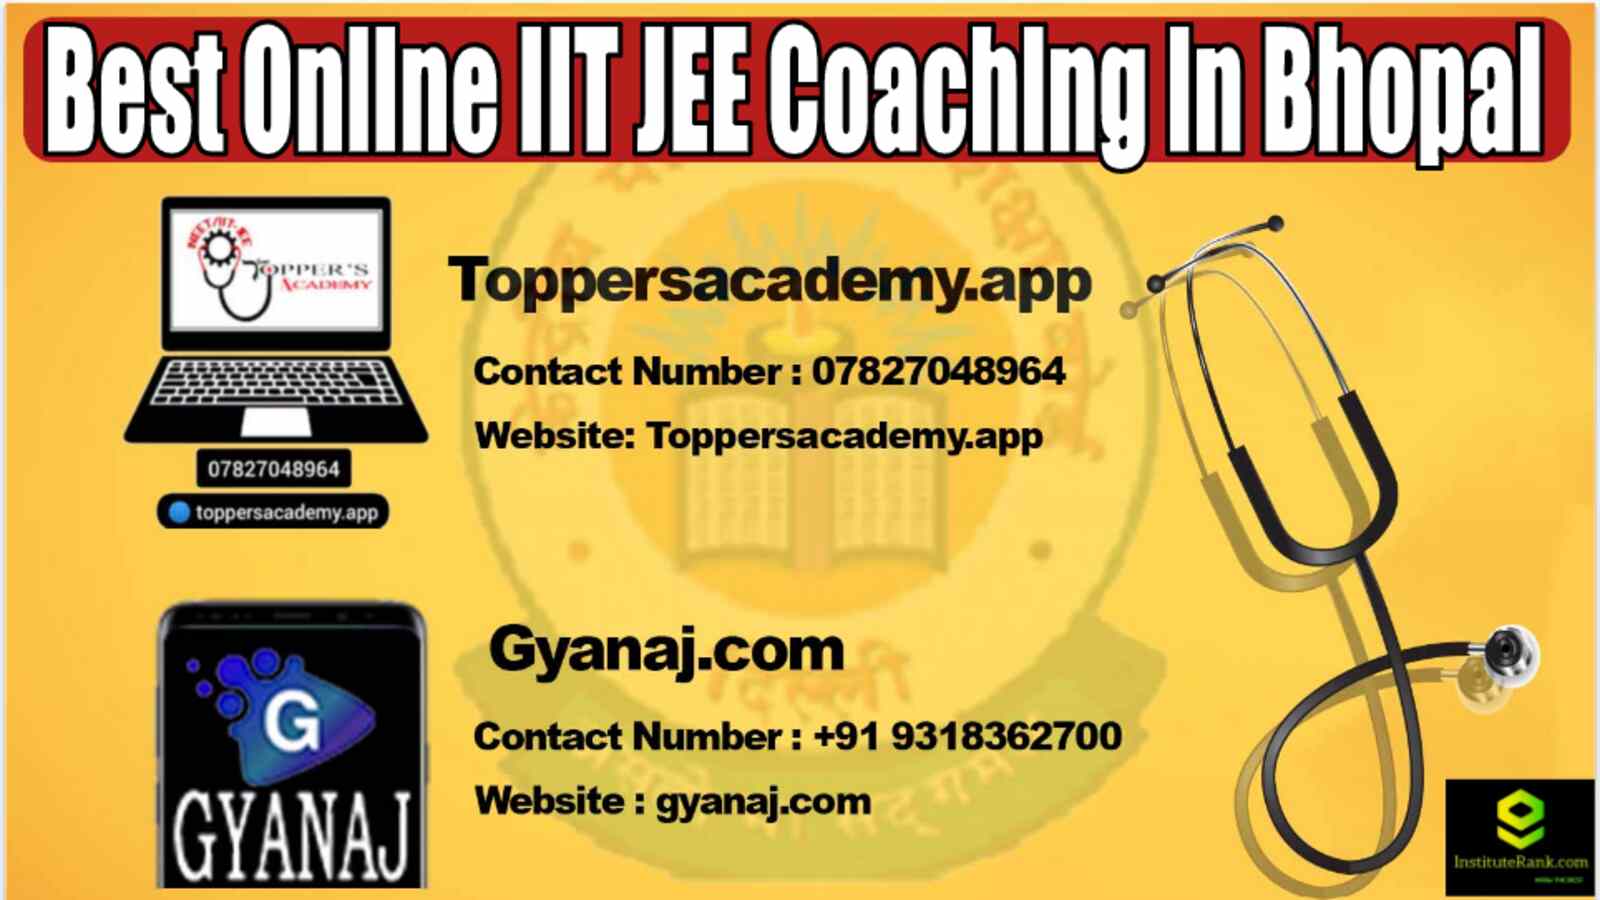 Best Online IIT JEE Coaching in Bhopal 2022